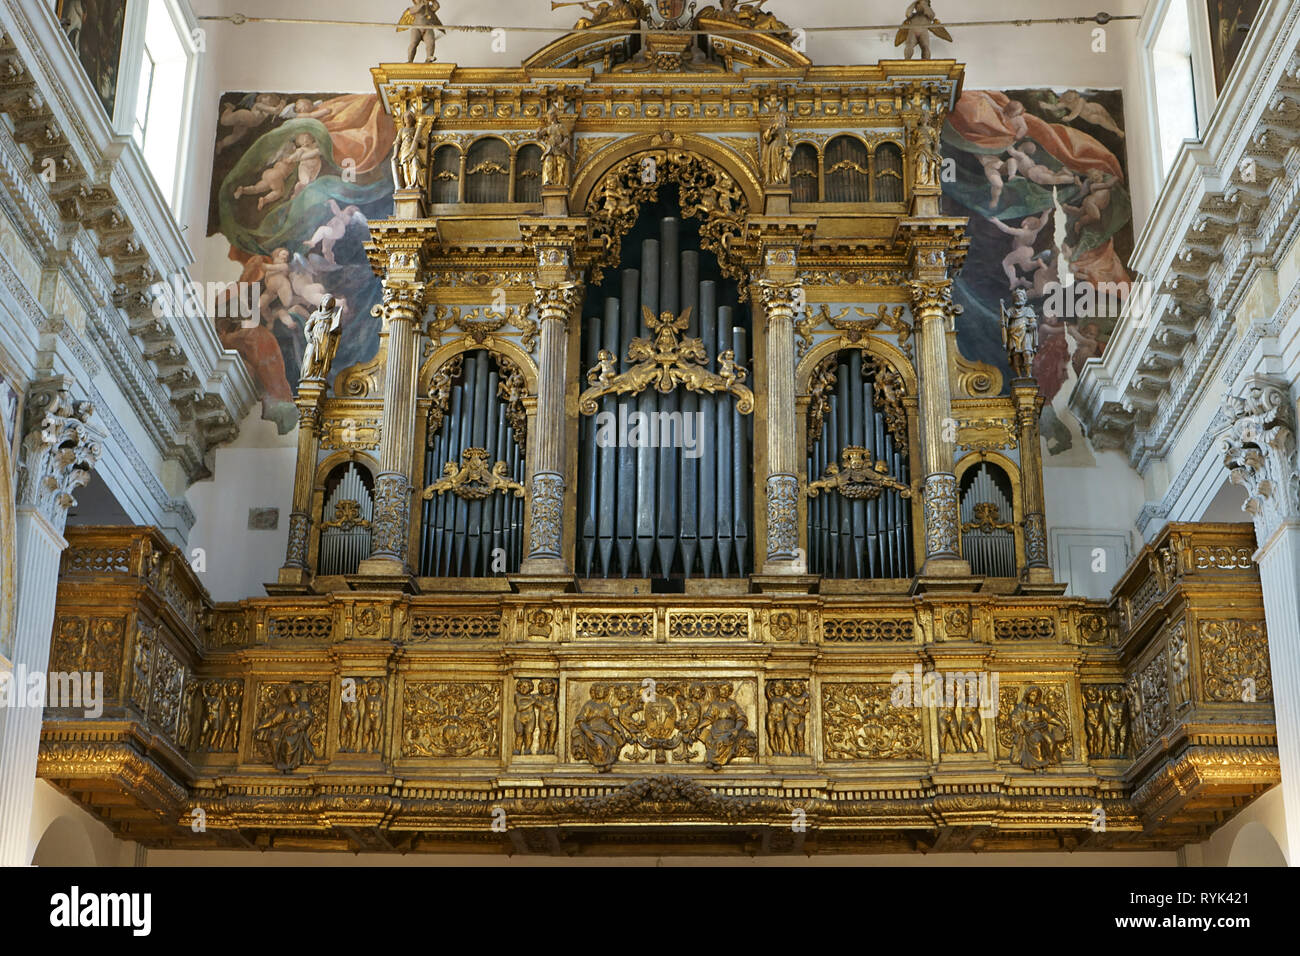 Chiesa Sant'Anna dei Lombardi -organo-, Naples, Italy Stock Photo